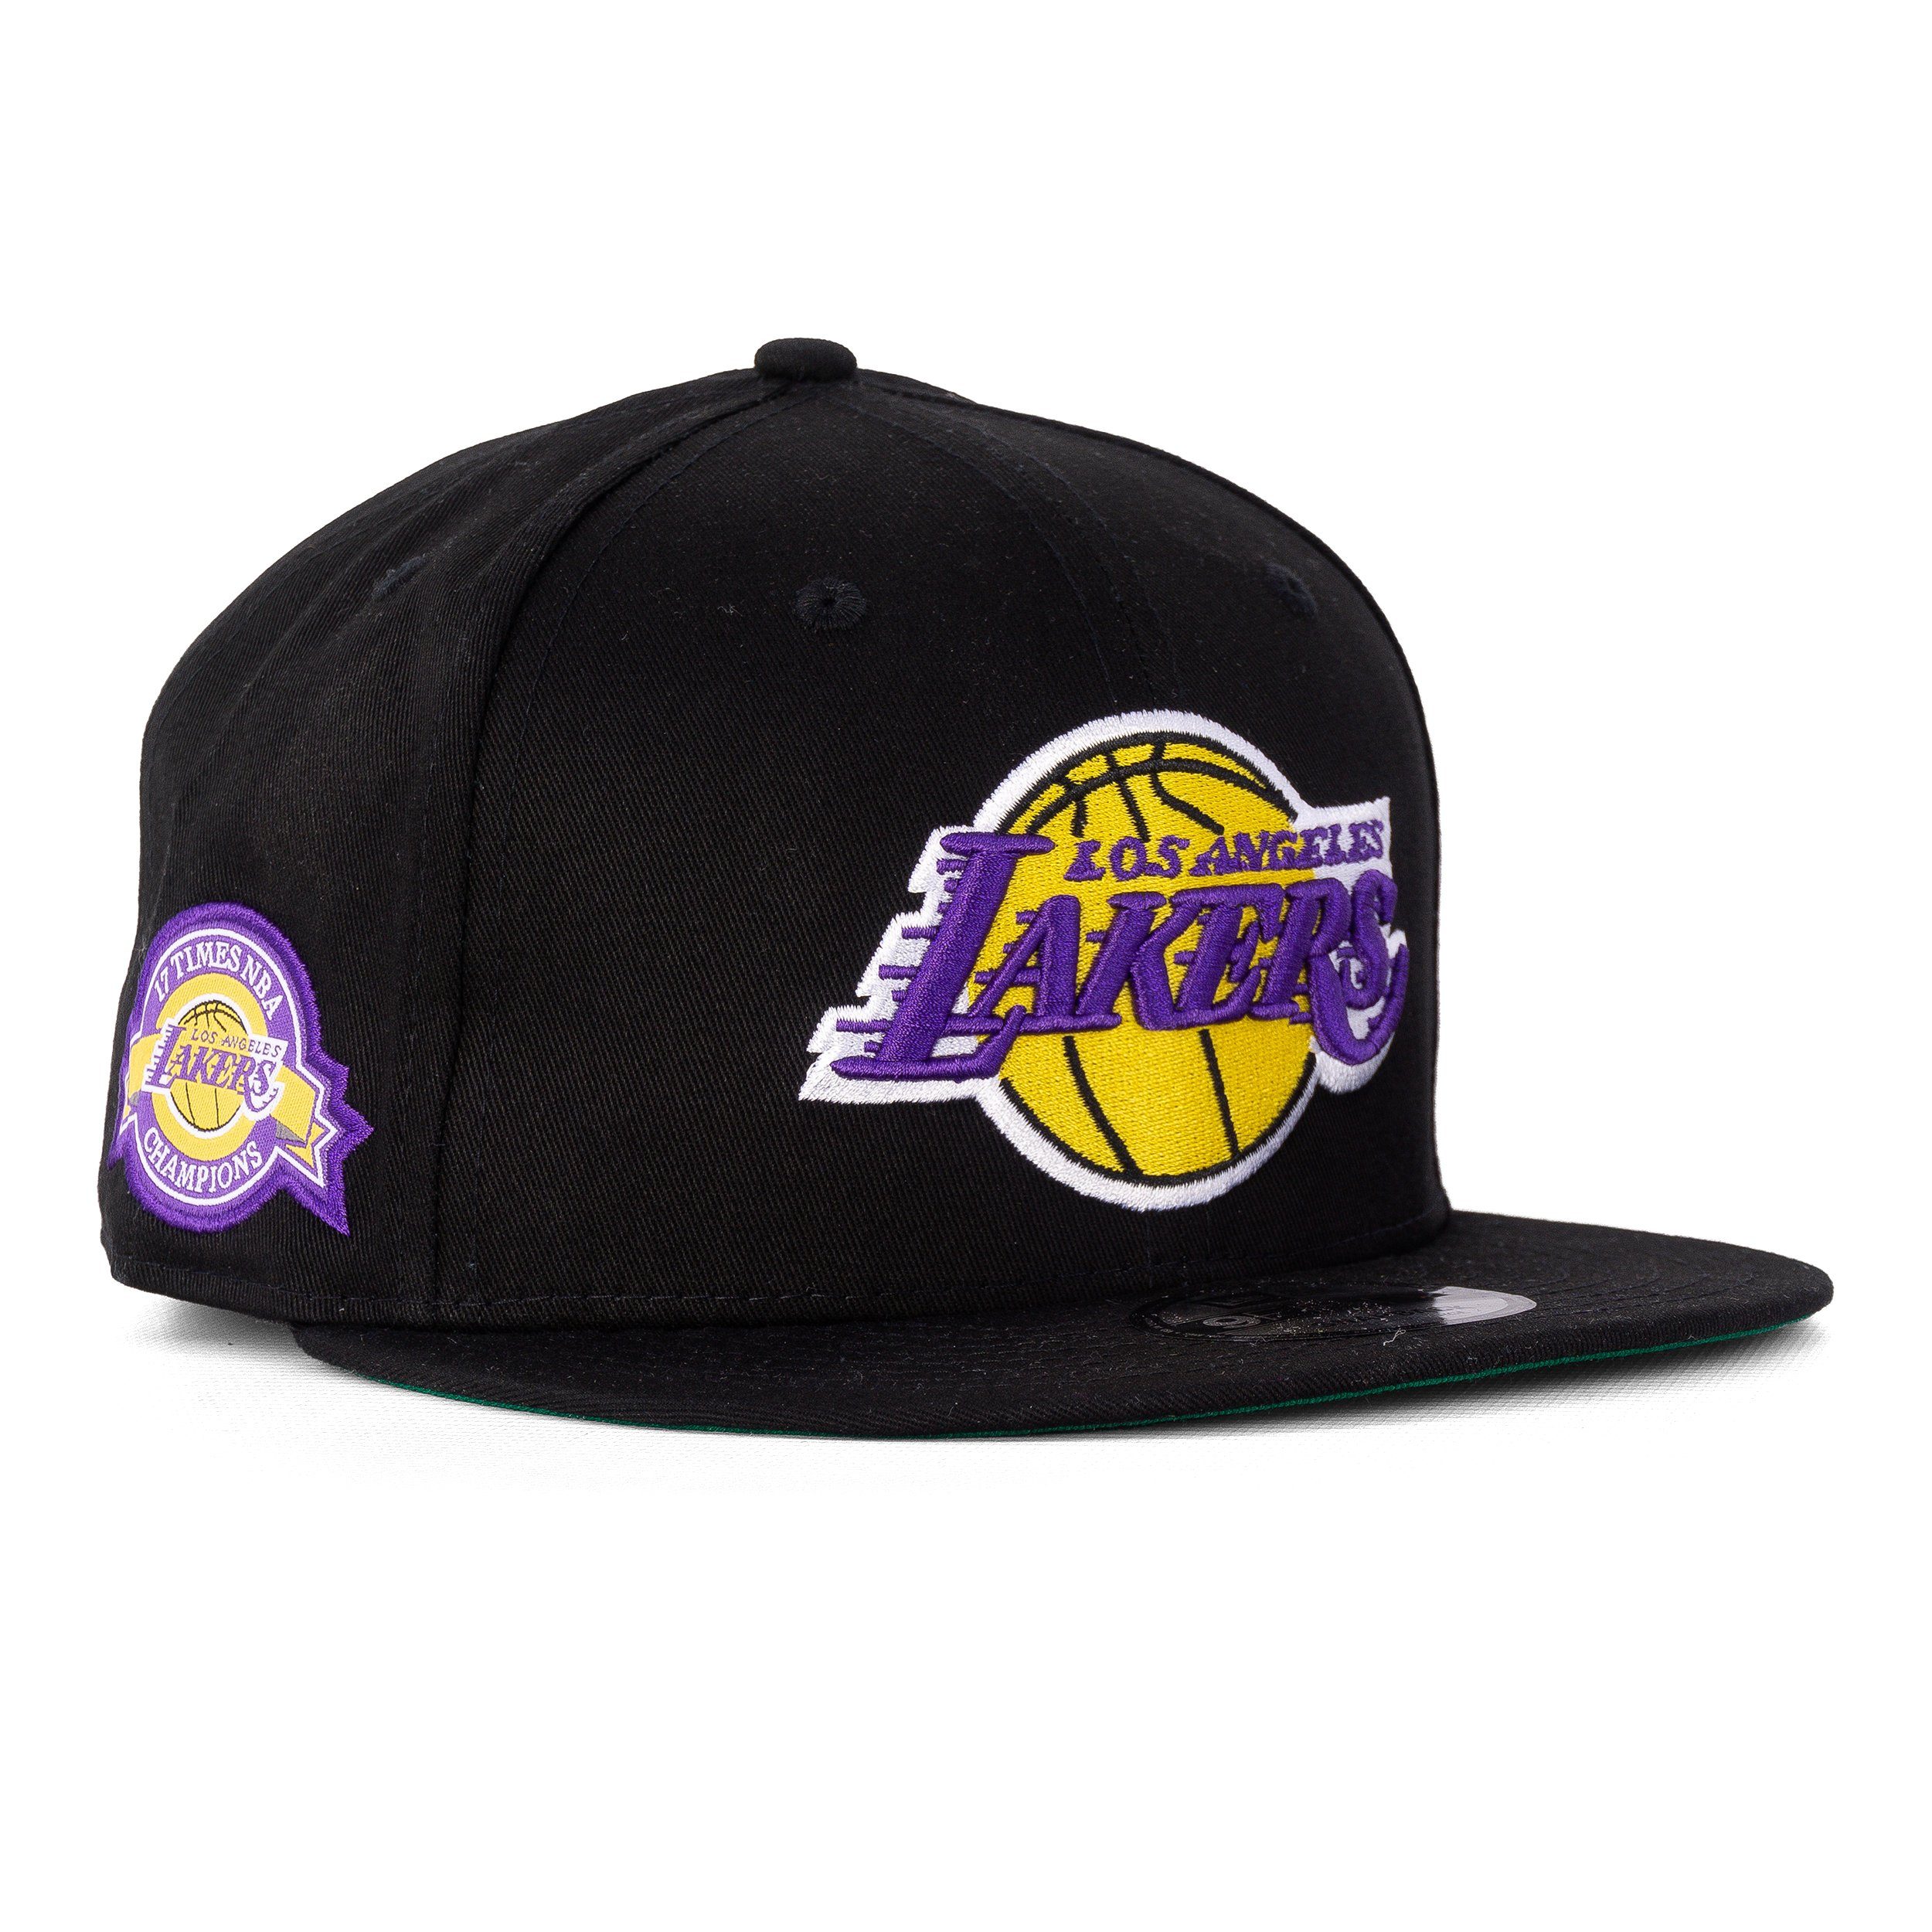 New Baseball 9Fifty LA Era NBA Era New Lakers Cap Cap